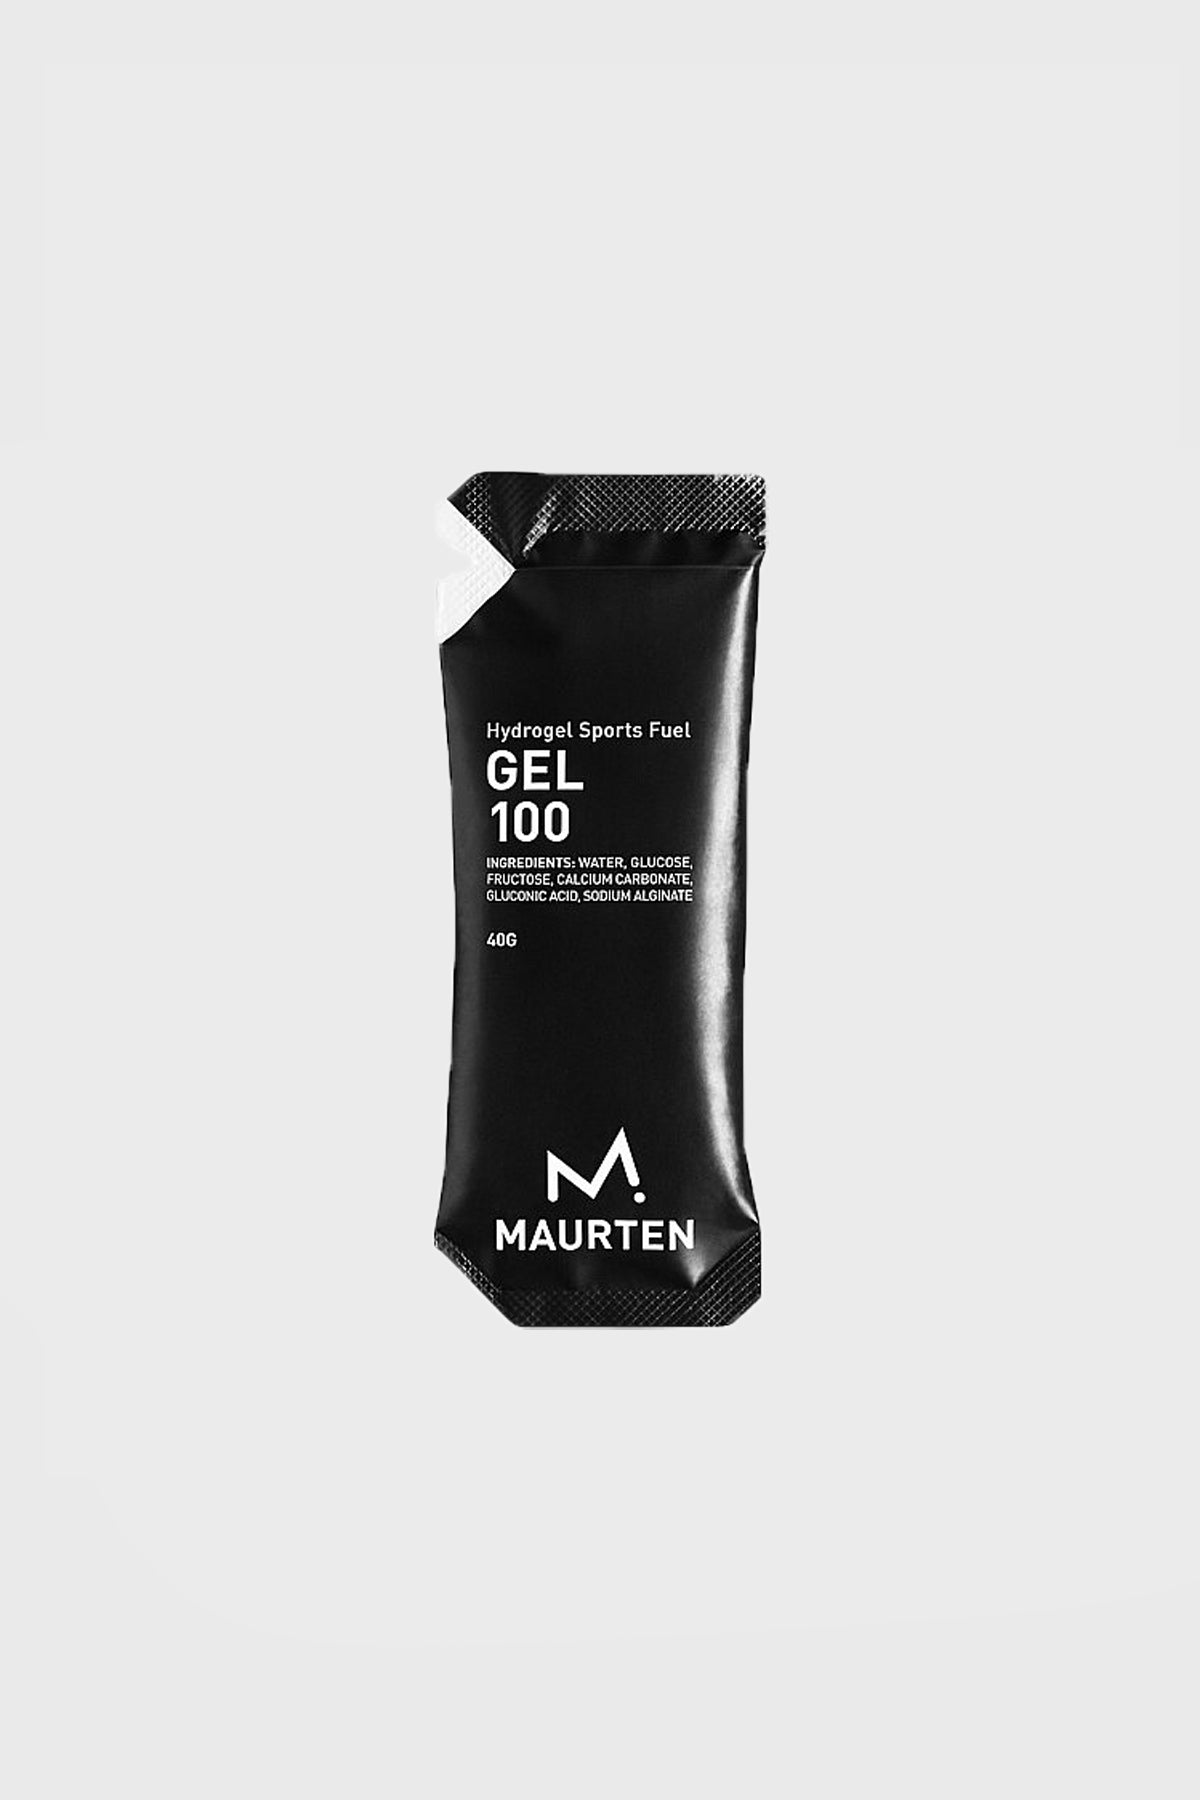 Maurten - Gel 100 - Sold unit